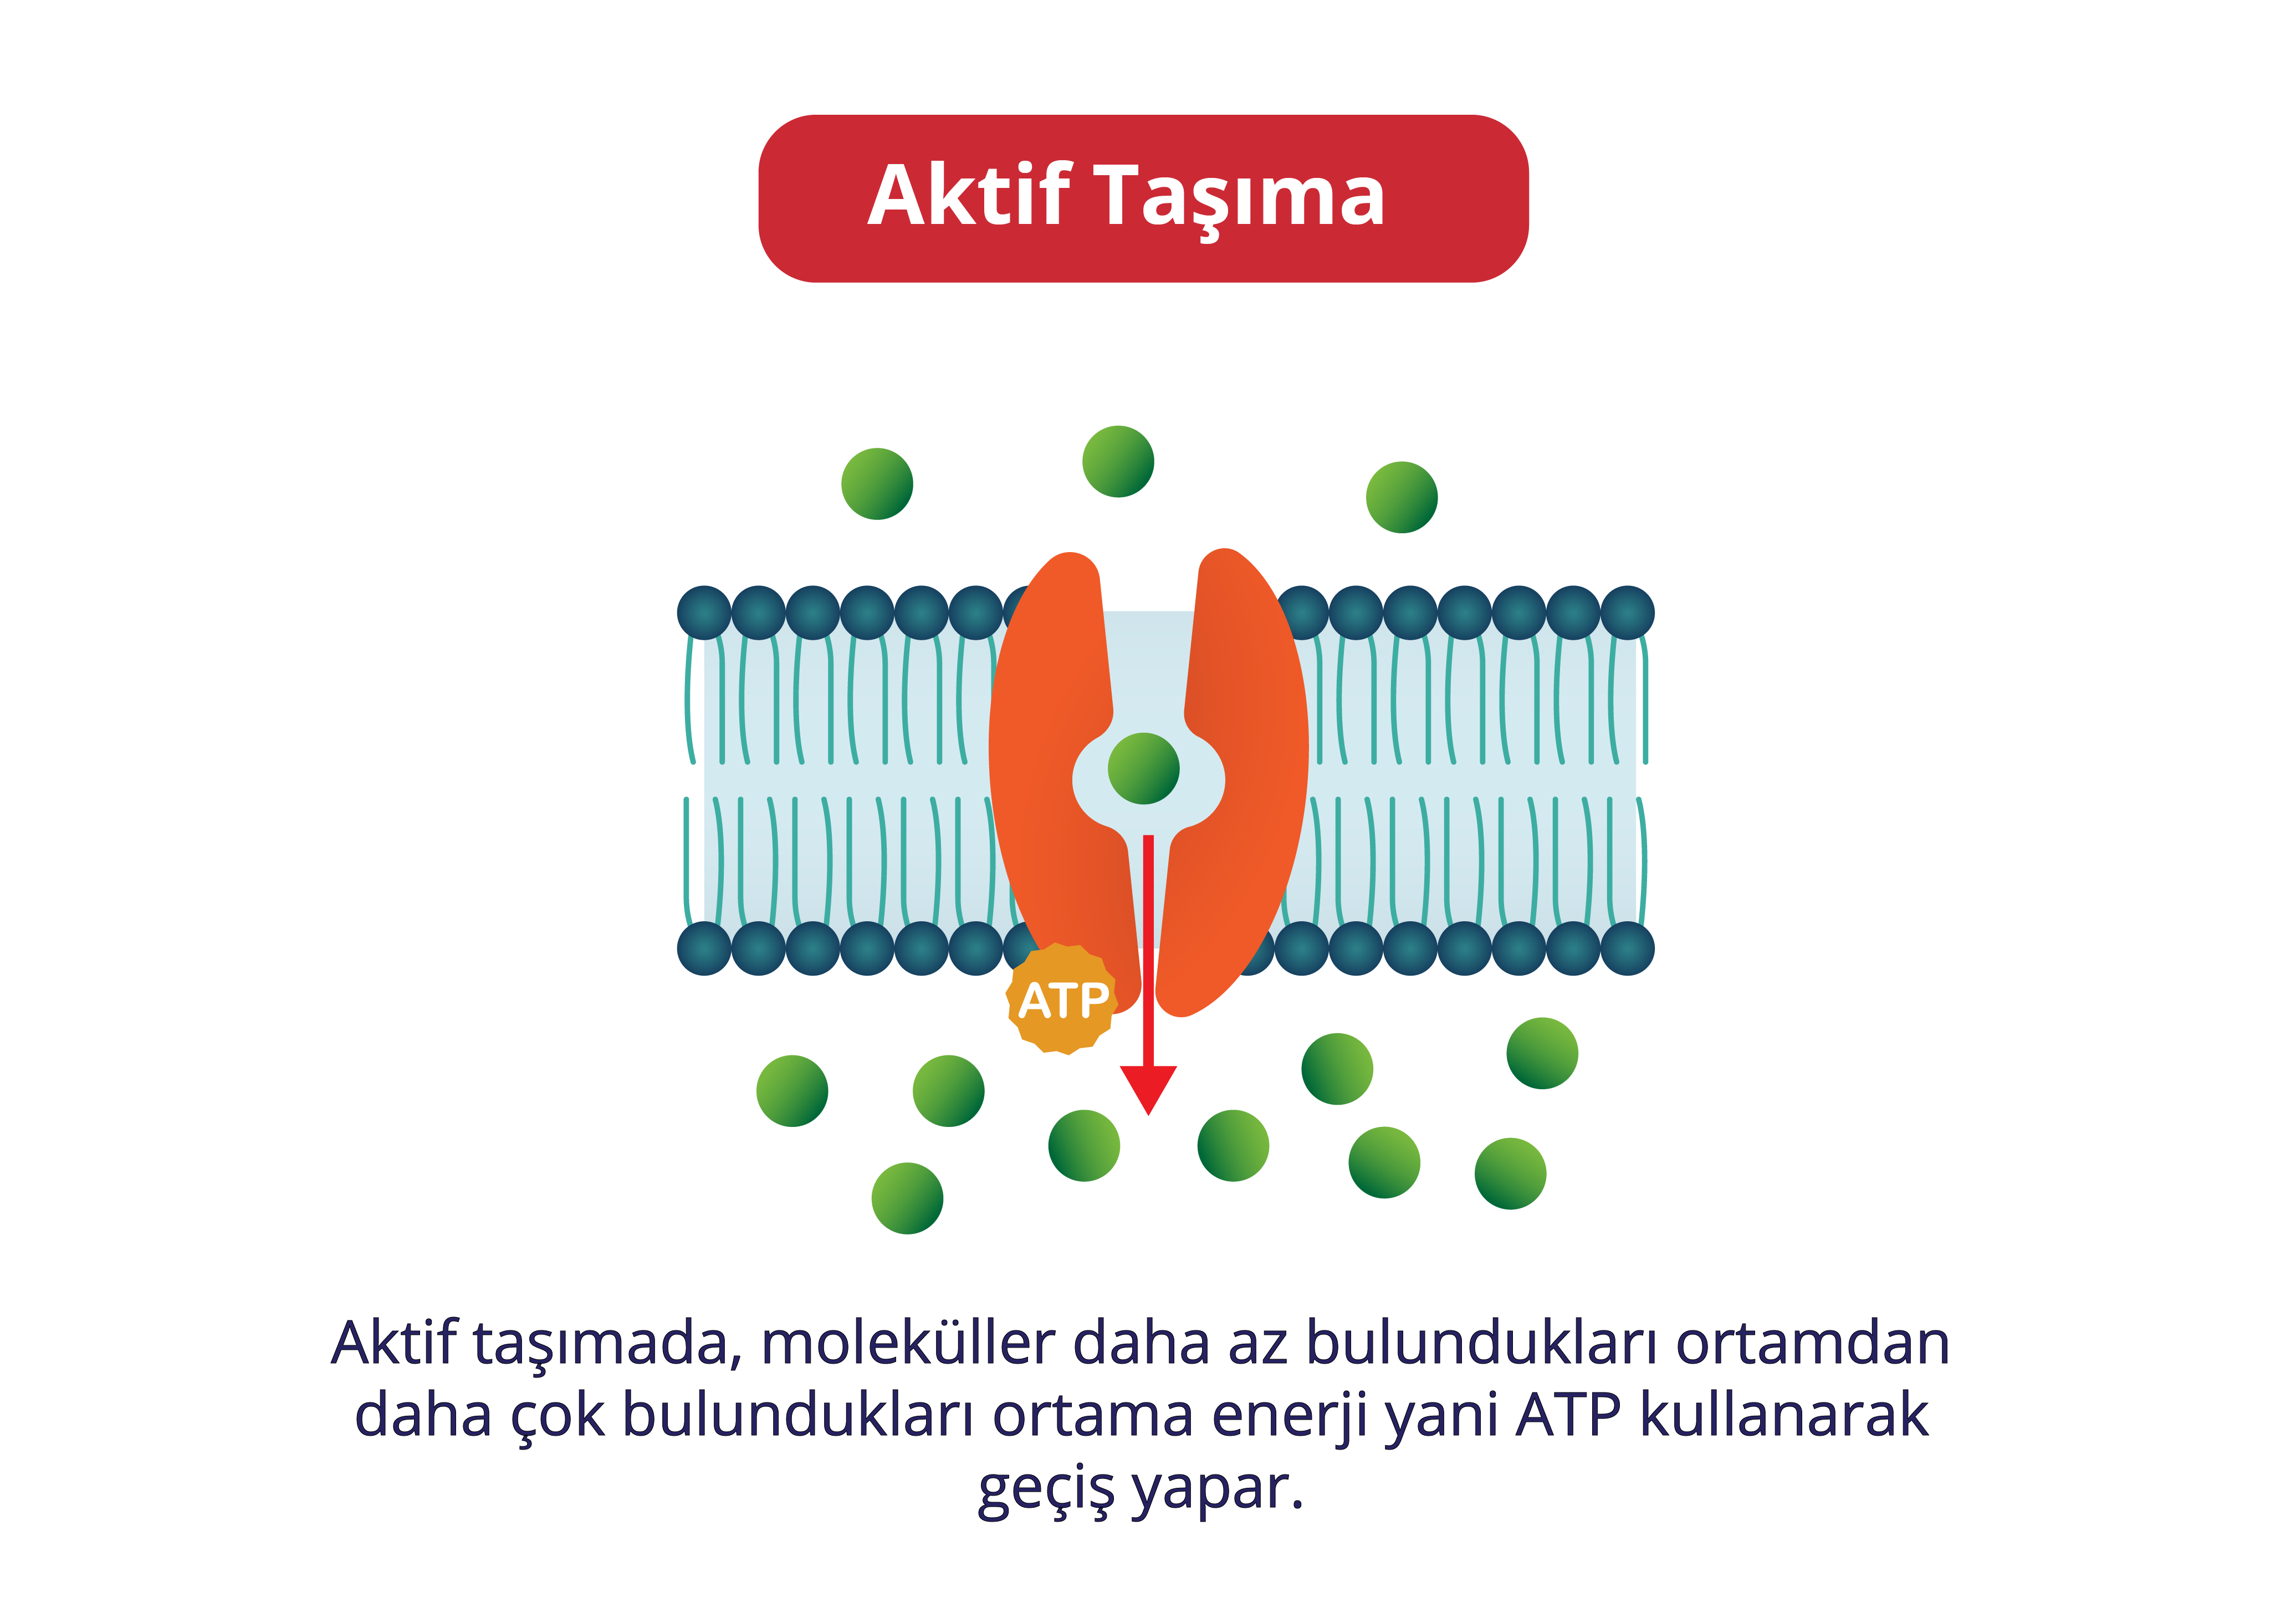 Aktif taşımada, moleküller daha az bulundukları ortamdan daha çok bulundukları ortama enerji yani ATP kullanarak geçiş yapar.